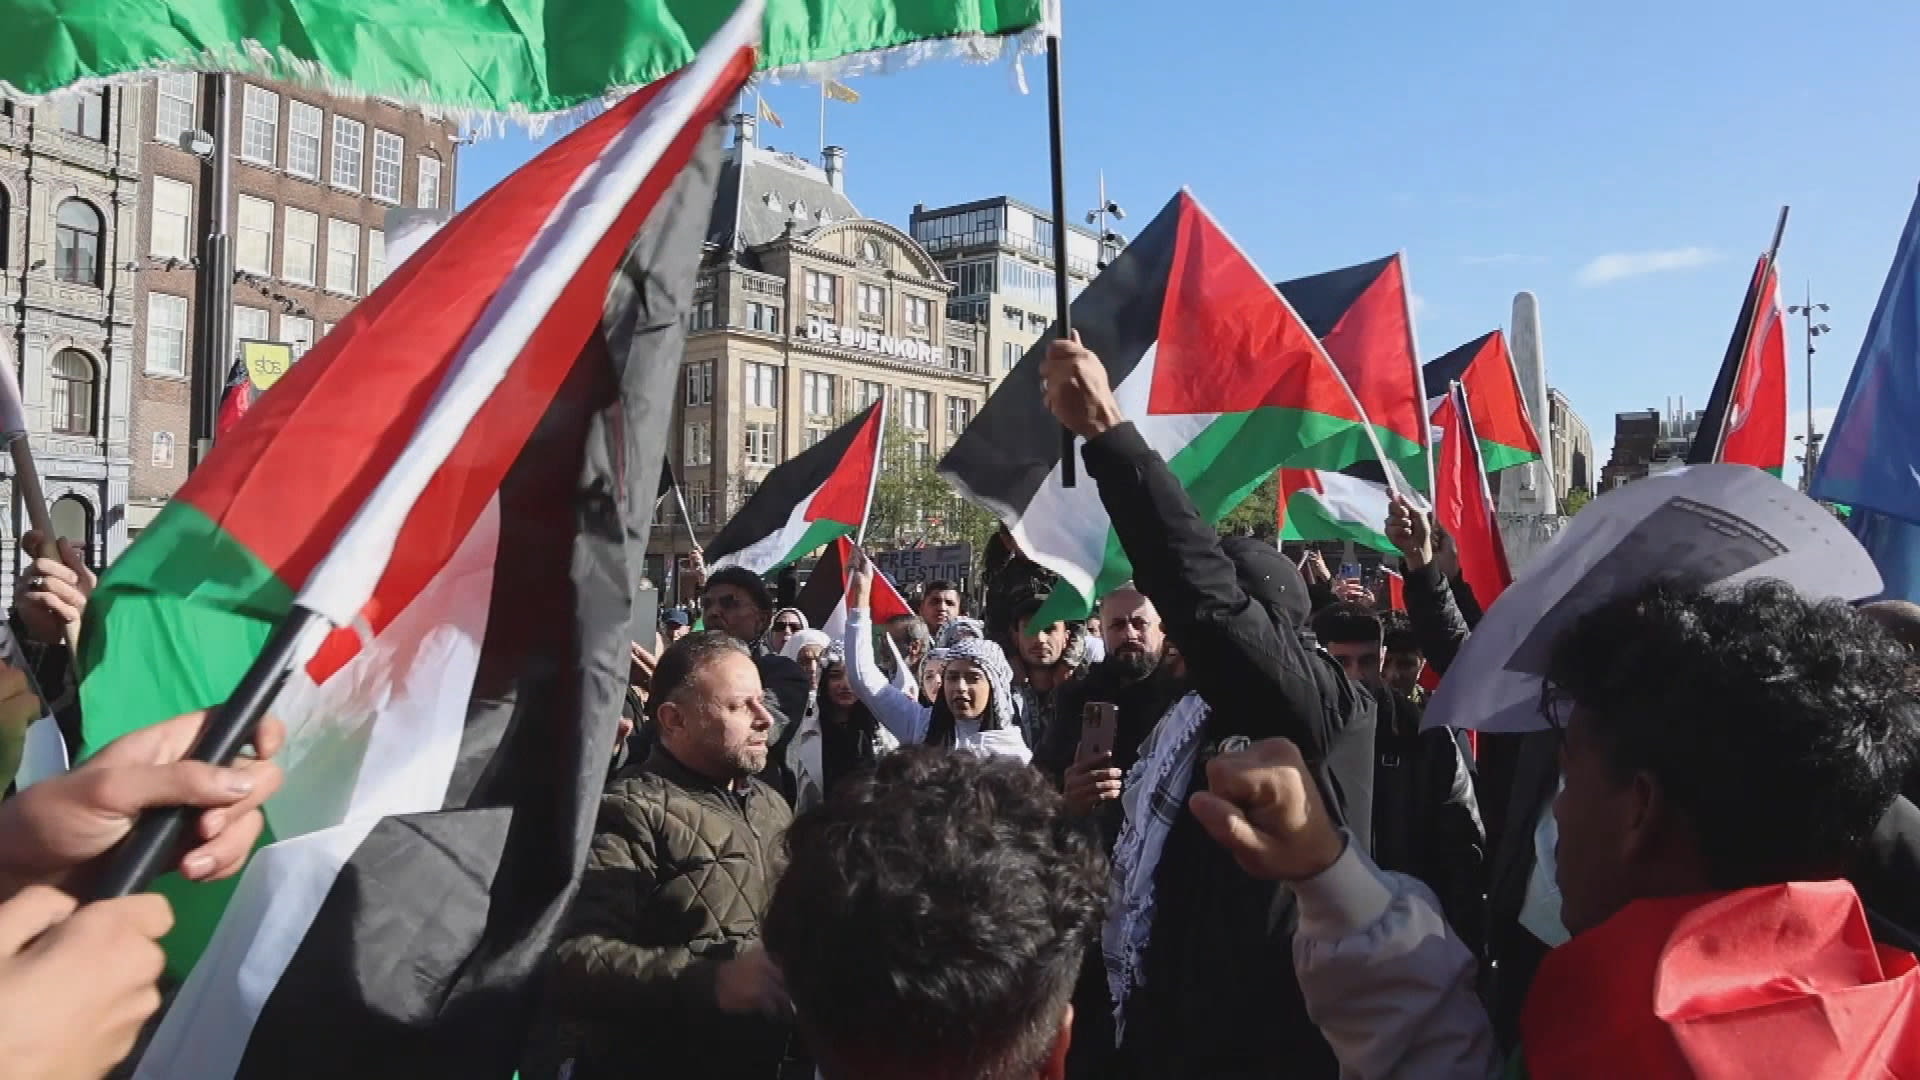 Dam stroomt vol voor mars voor Palestina door Amsterdam